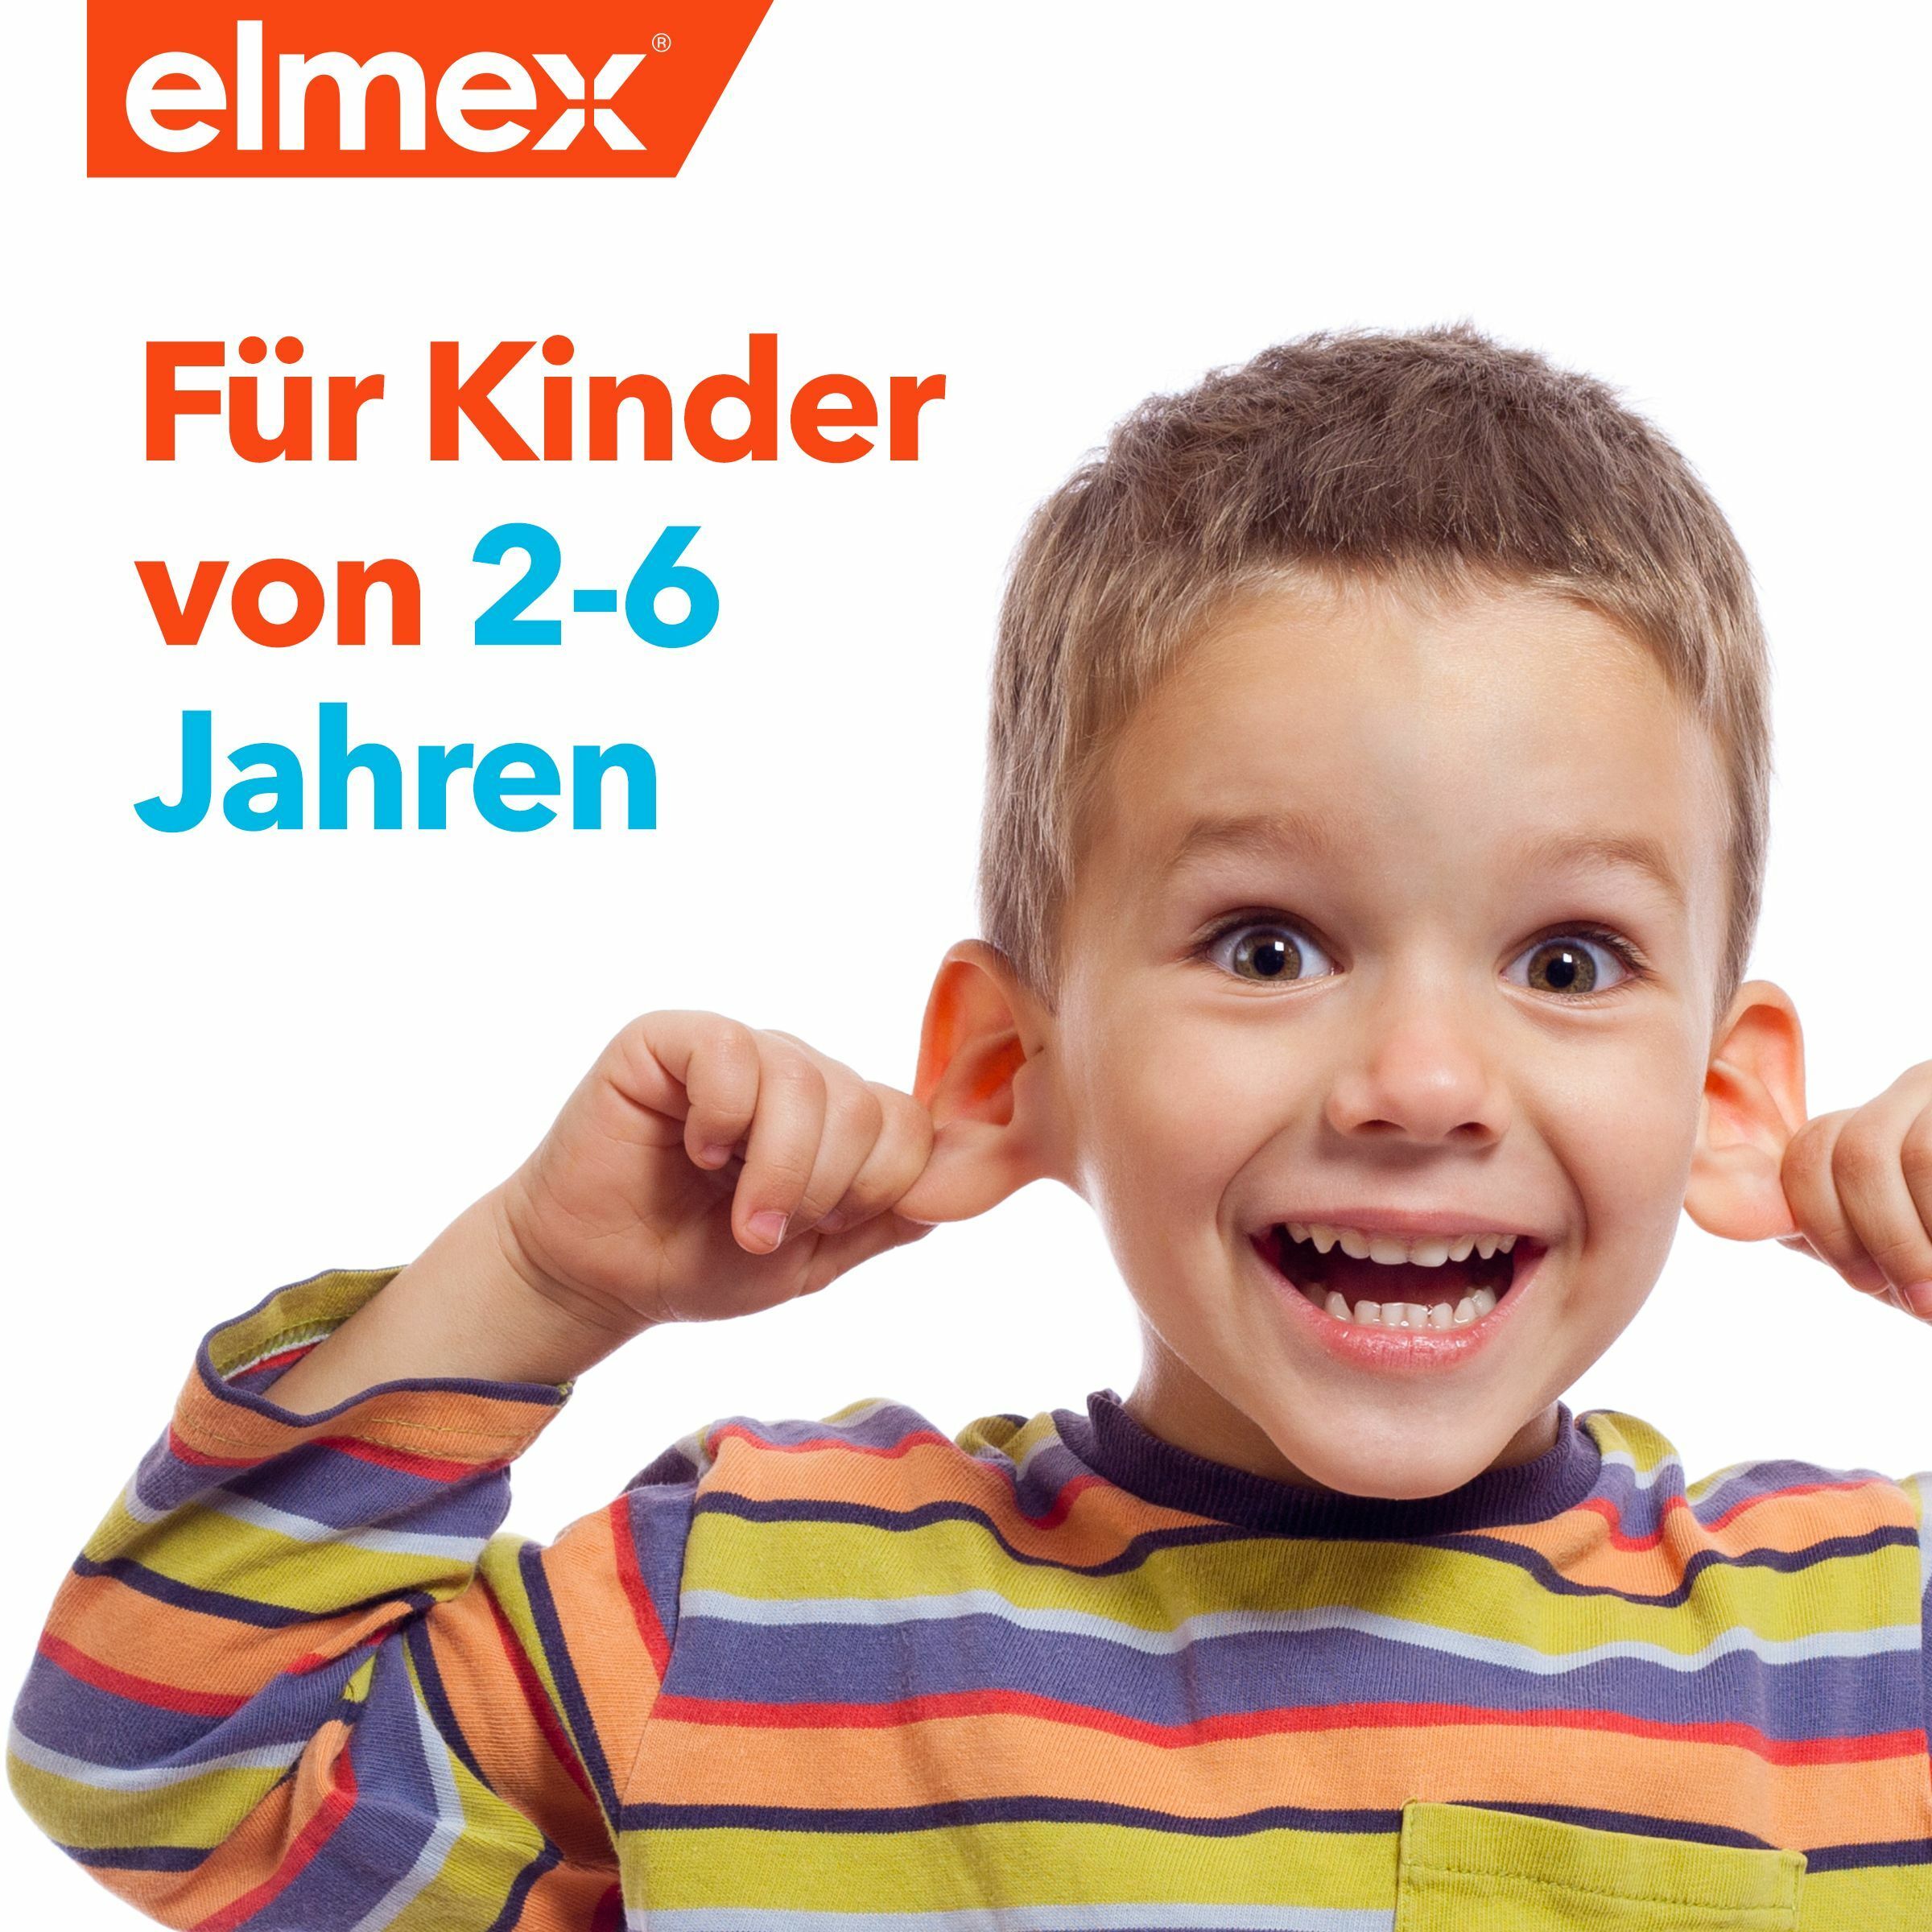 elmex Kinder-Zahnbürste weich für Kinder im Alter von 2-6 Jahren